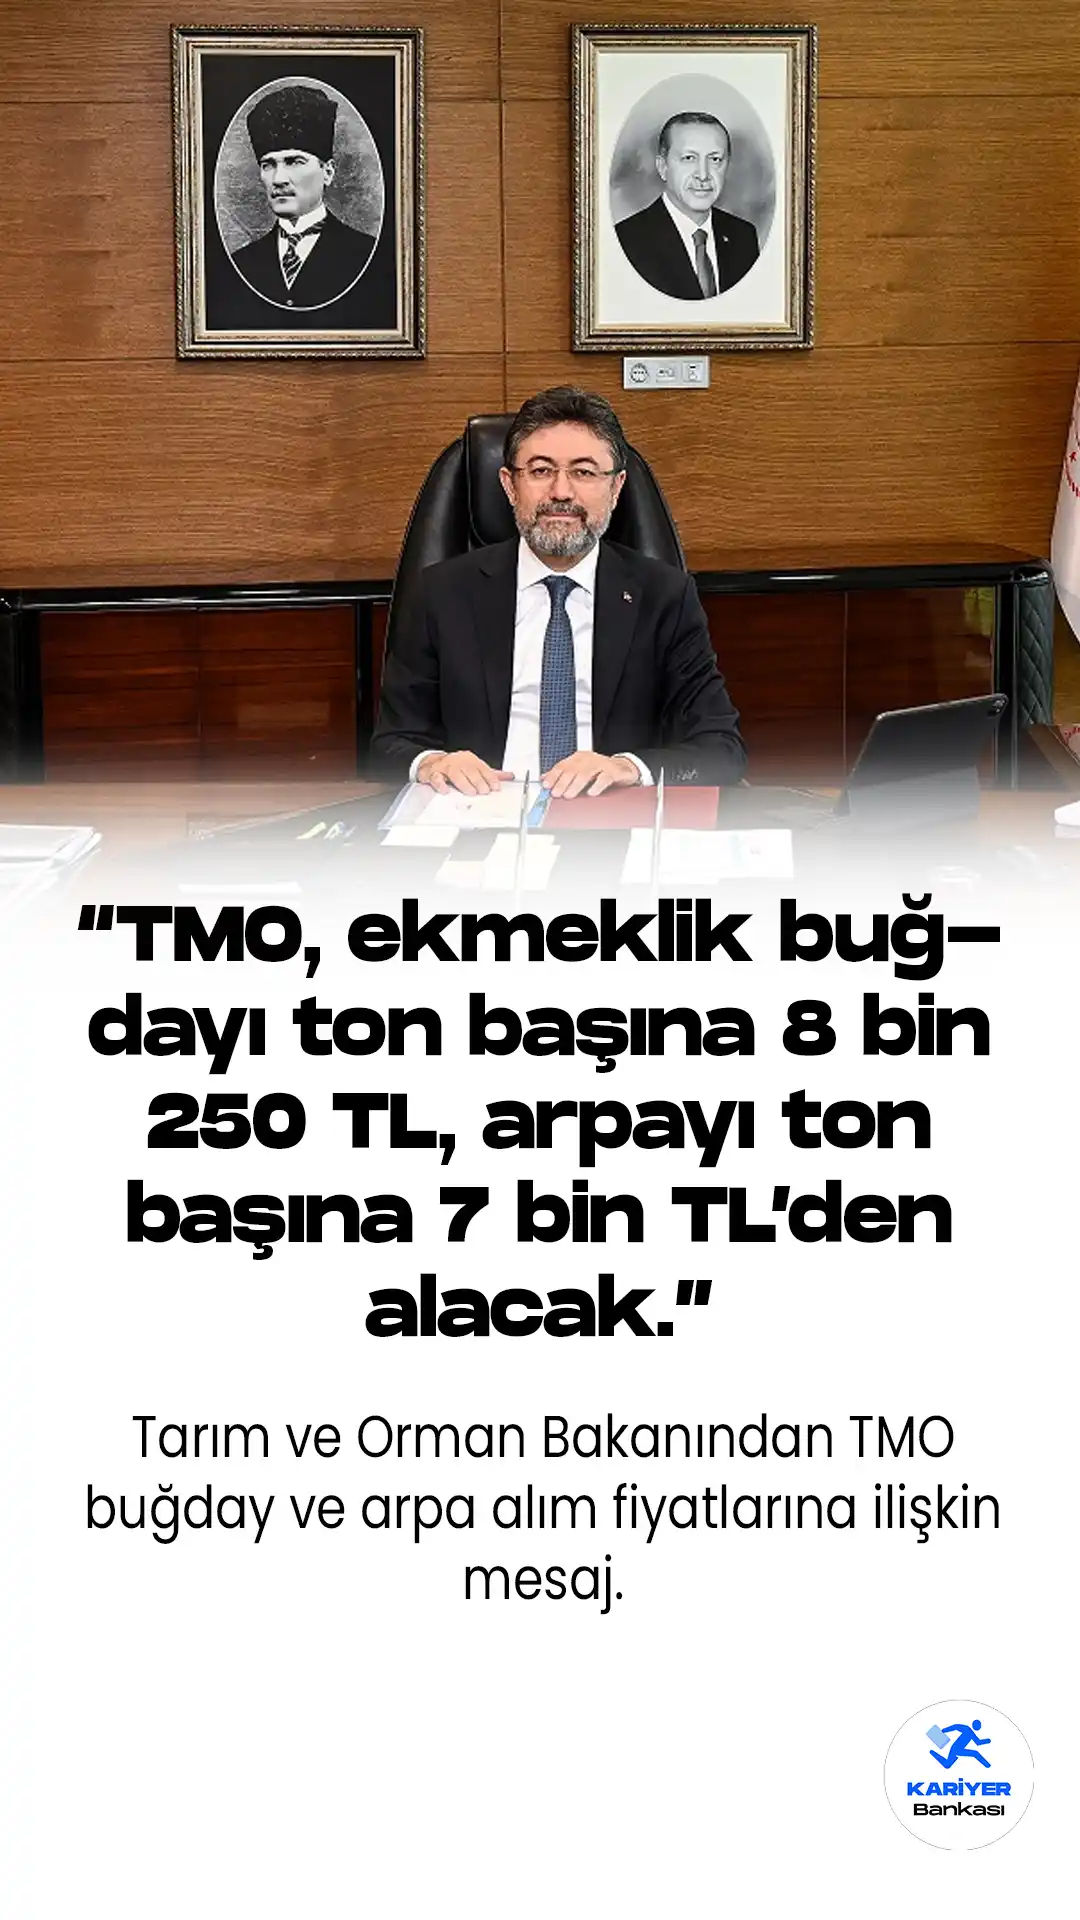 TMO buğday ve arpa alım fiyatlarına ilişkin Tarım ve Orman Bakanı İbrahim Yumaklı sosyal medya hesabından hayırlı olsun mesajı yayımladı.